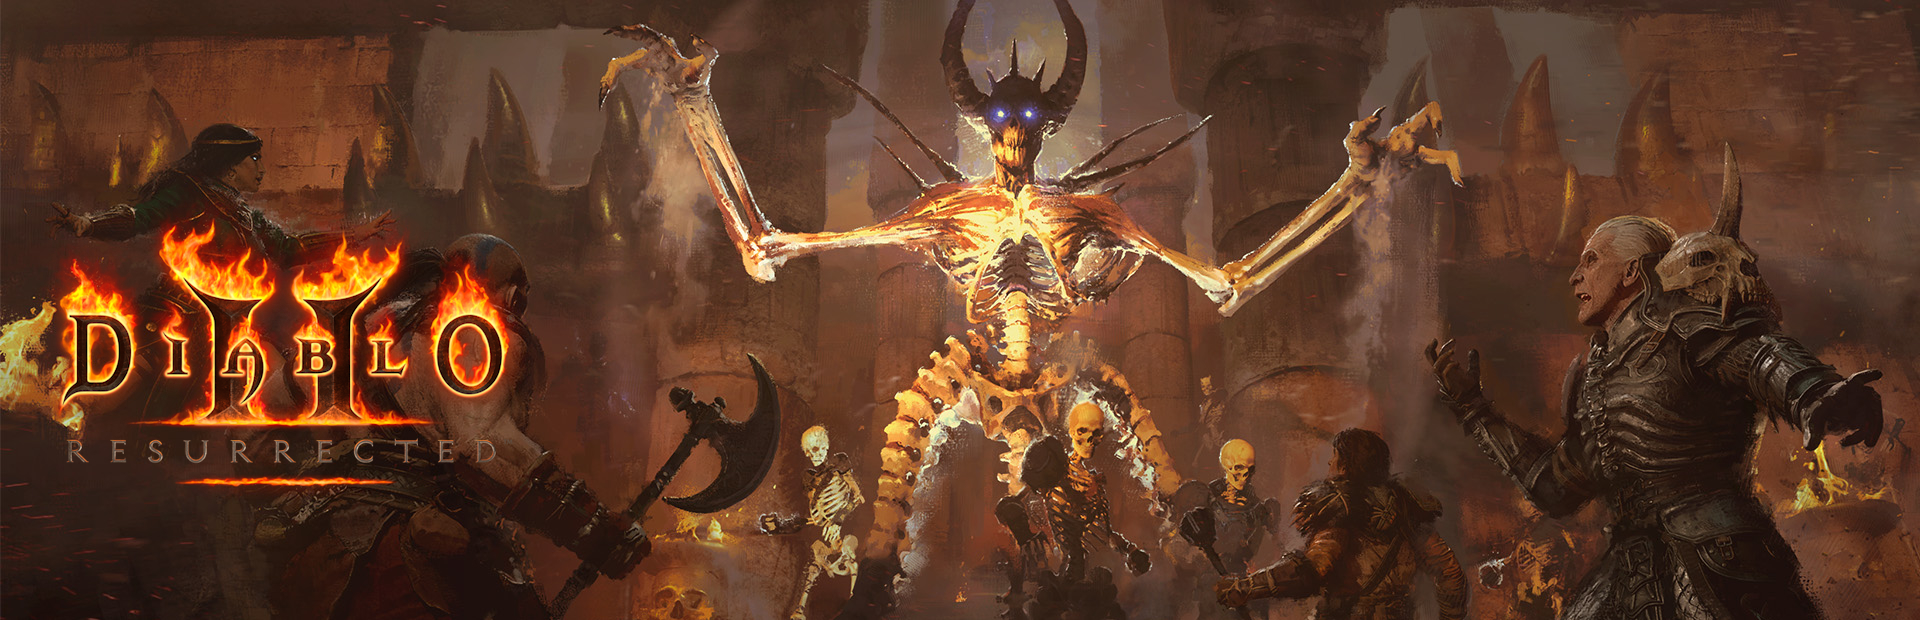 دانلود بازی Diablo II: Resurrected برای پی سی | گیمباتو